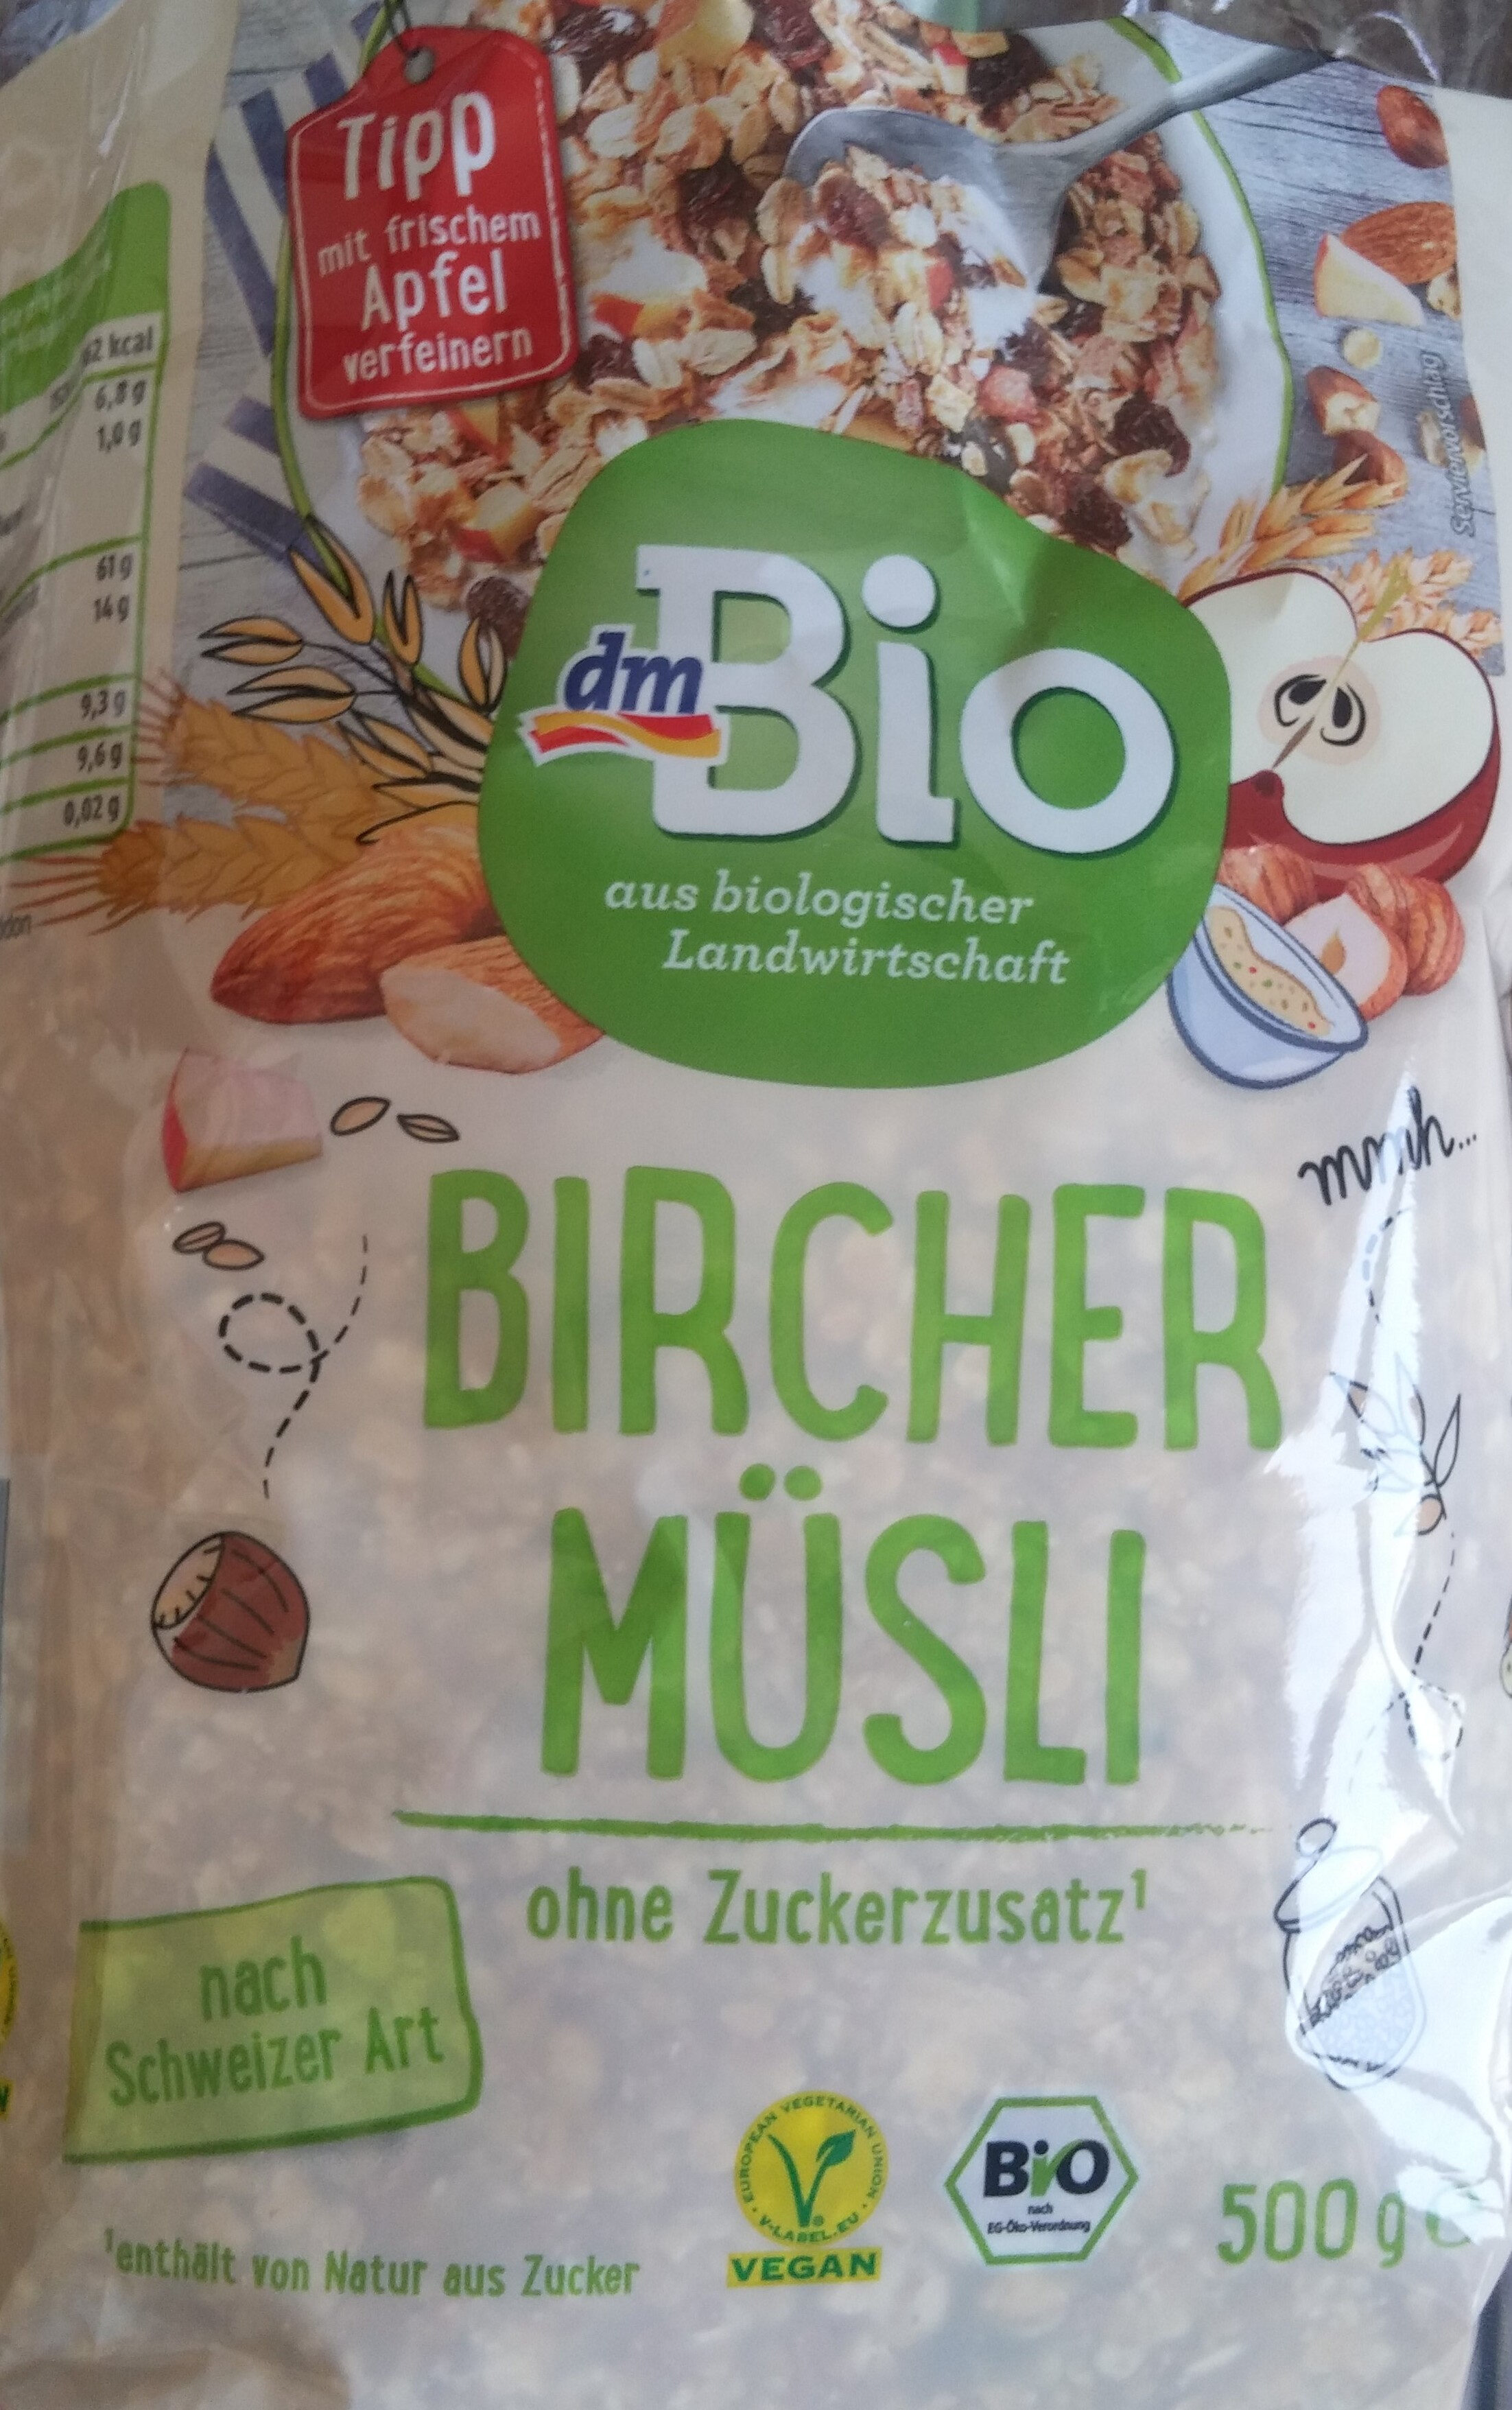 Bircher Müsli - Product - de